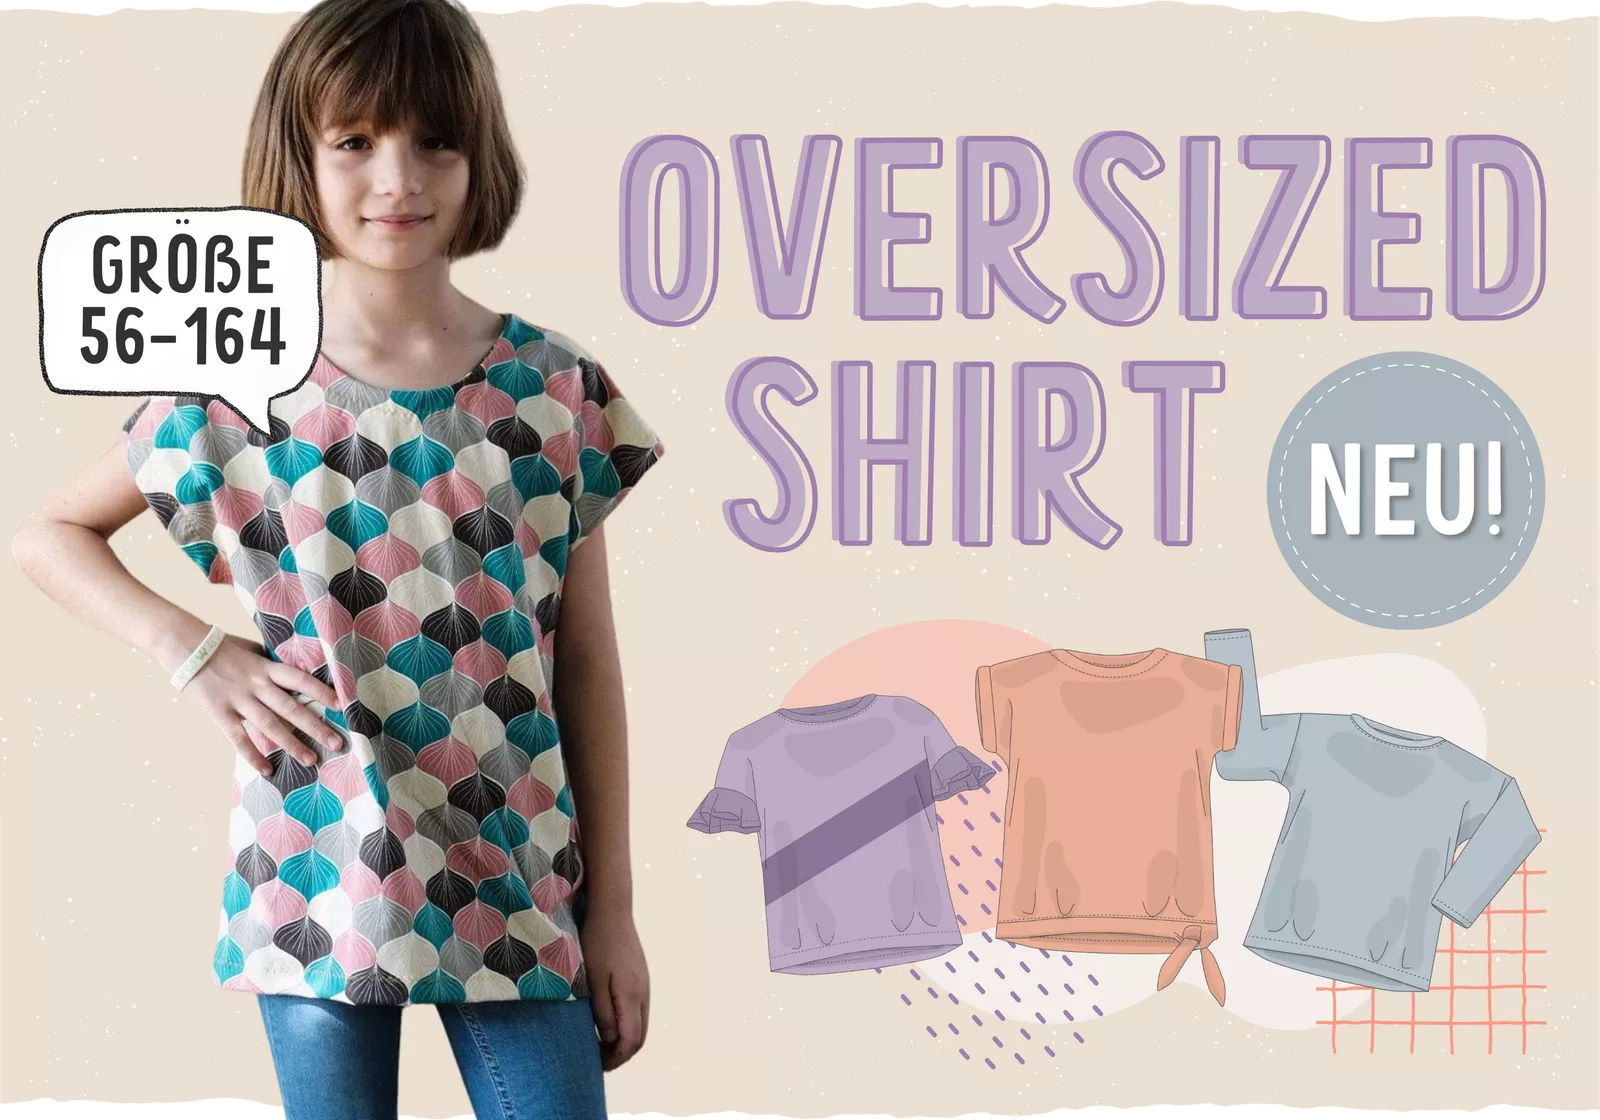 NEU: Oversized Shirt für Kids